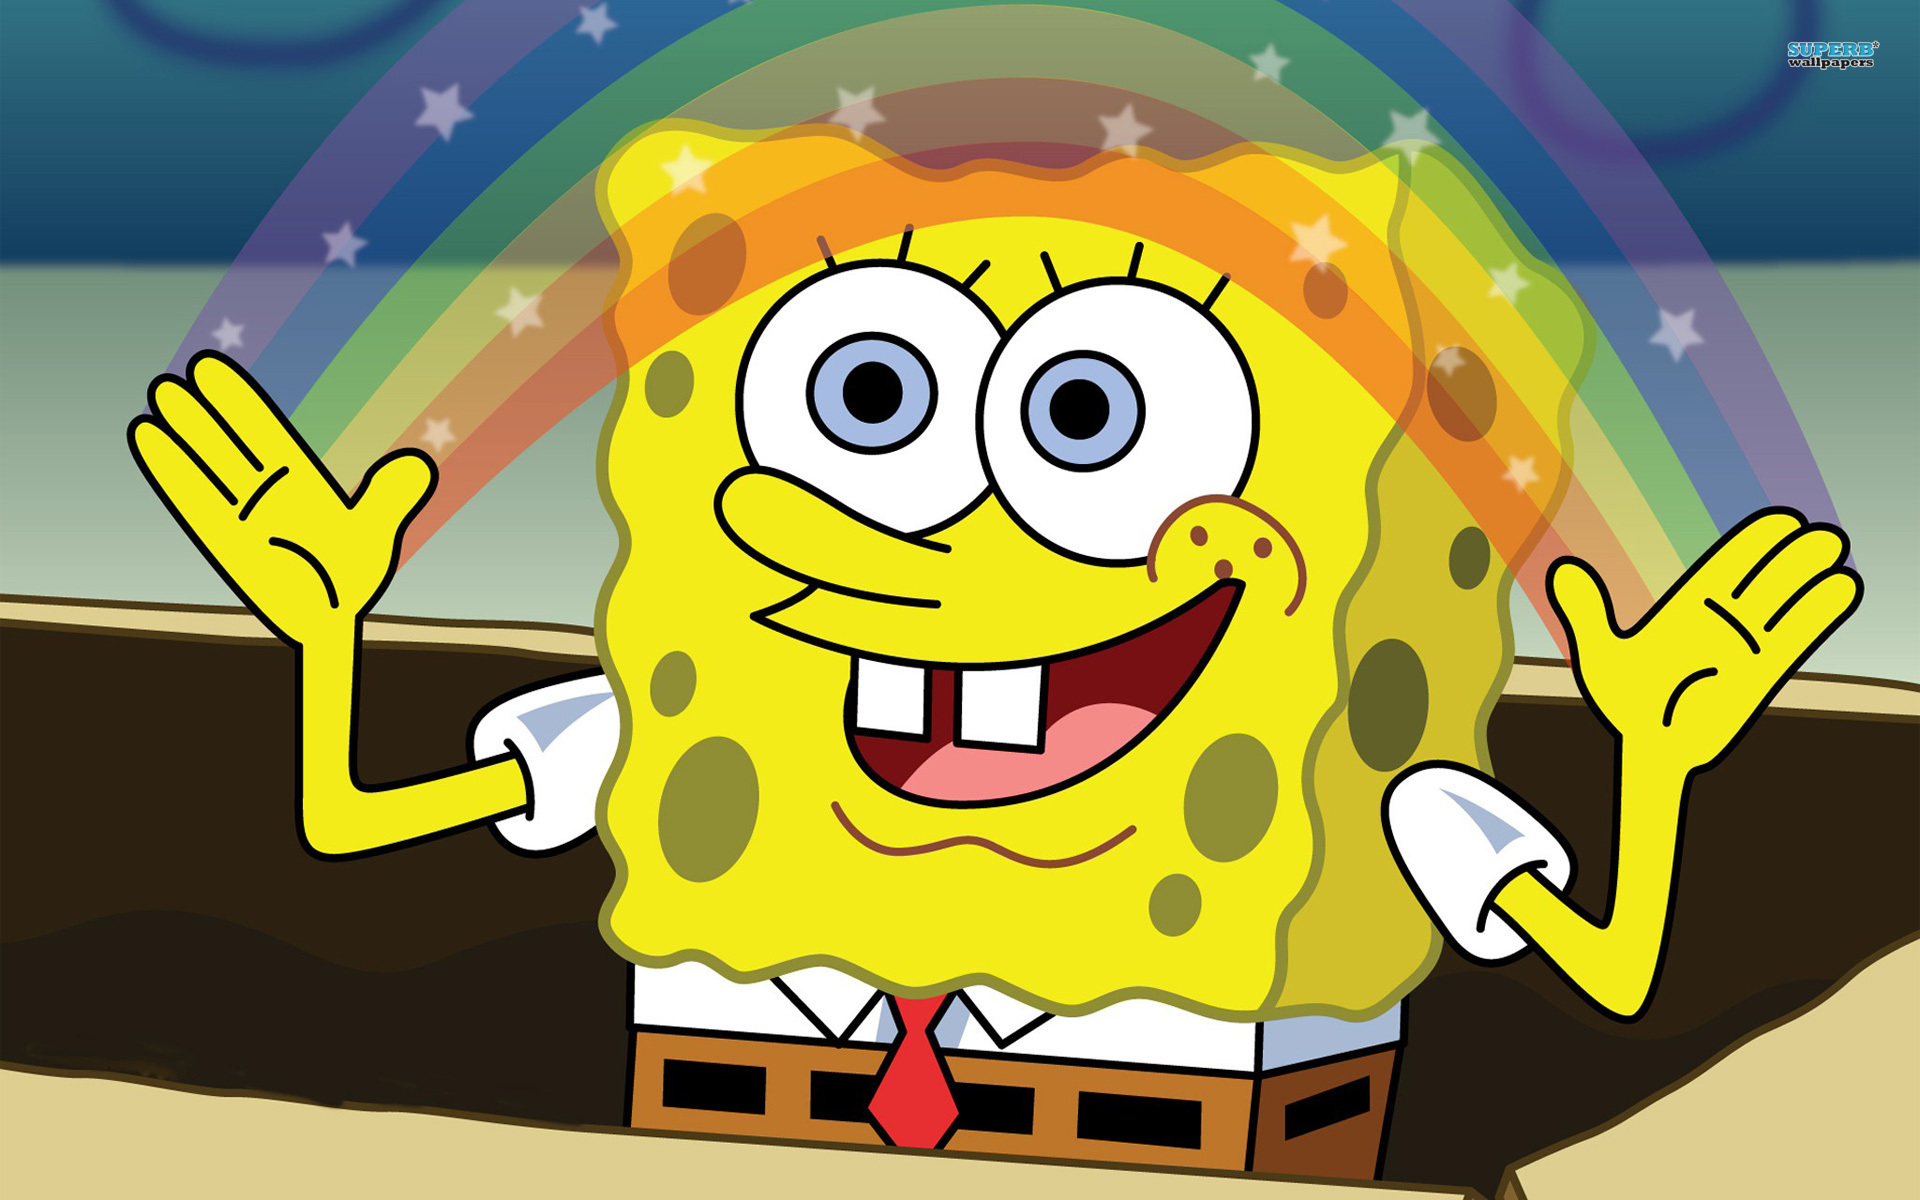 Spongebob Squarepants Backgrounds, Compatible - PC, Mobile, Gadgets| 1920x1200 px